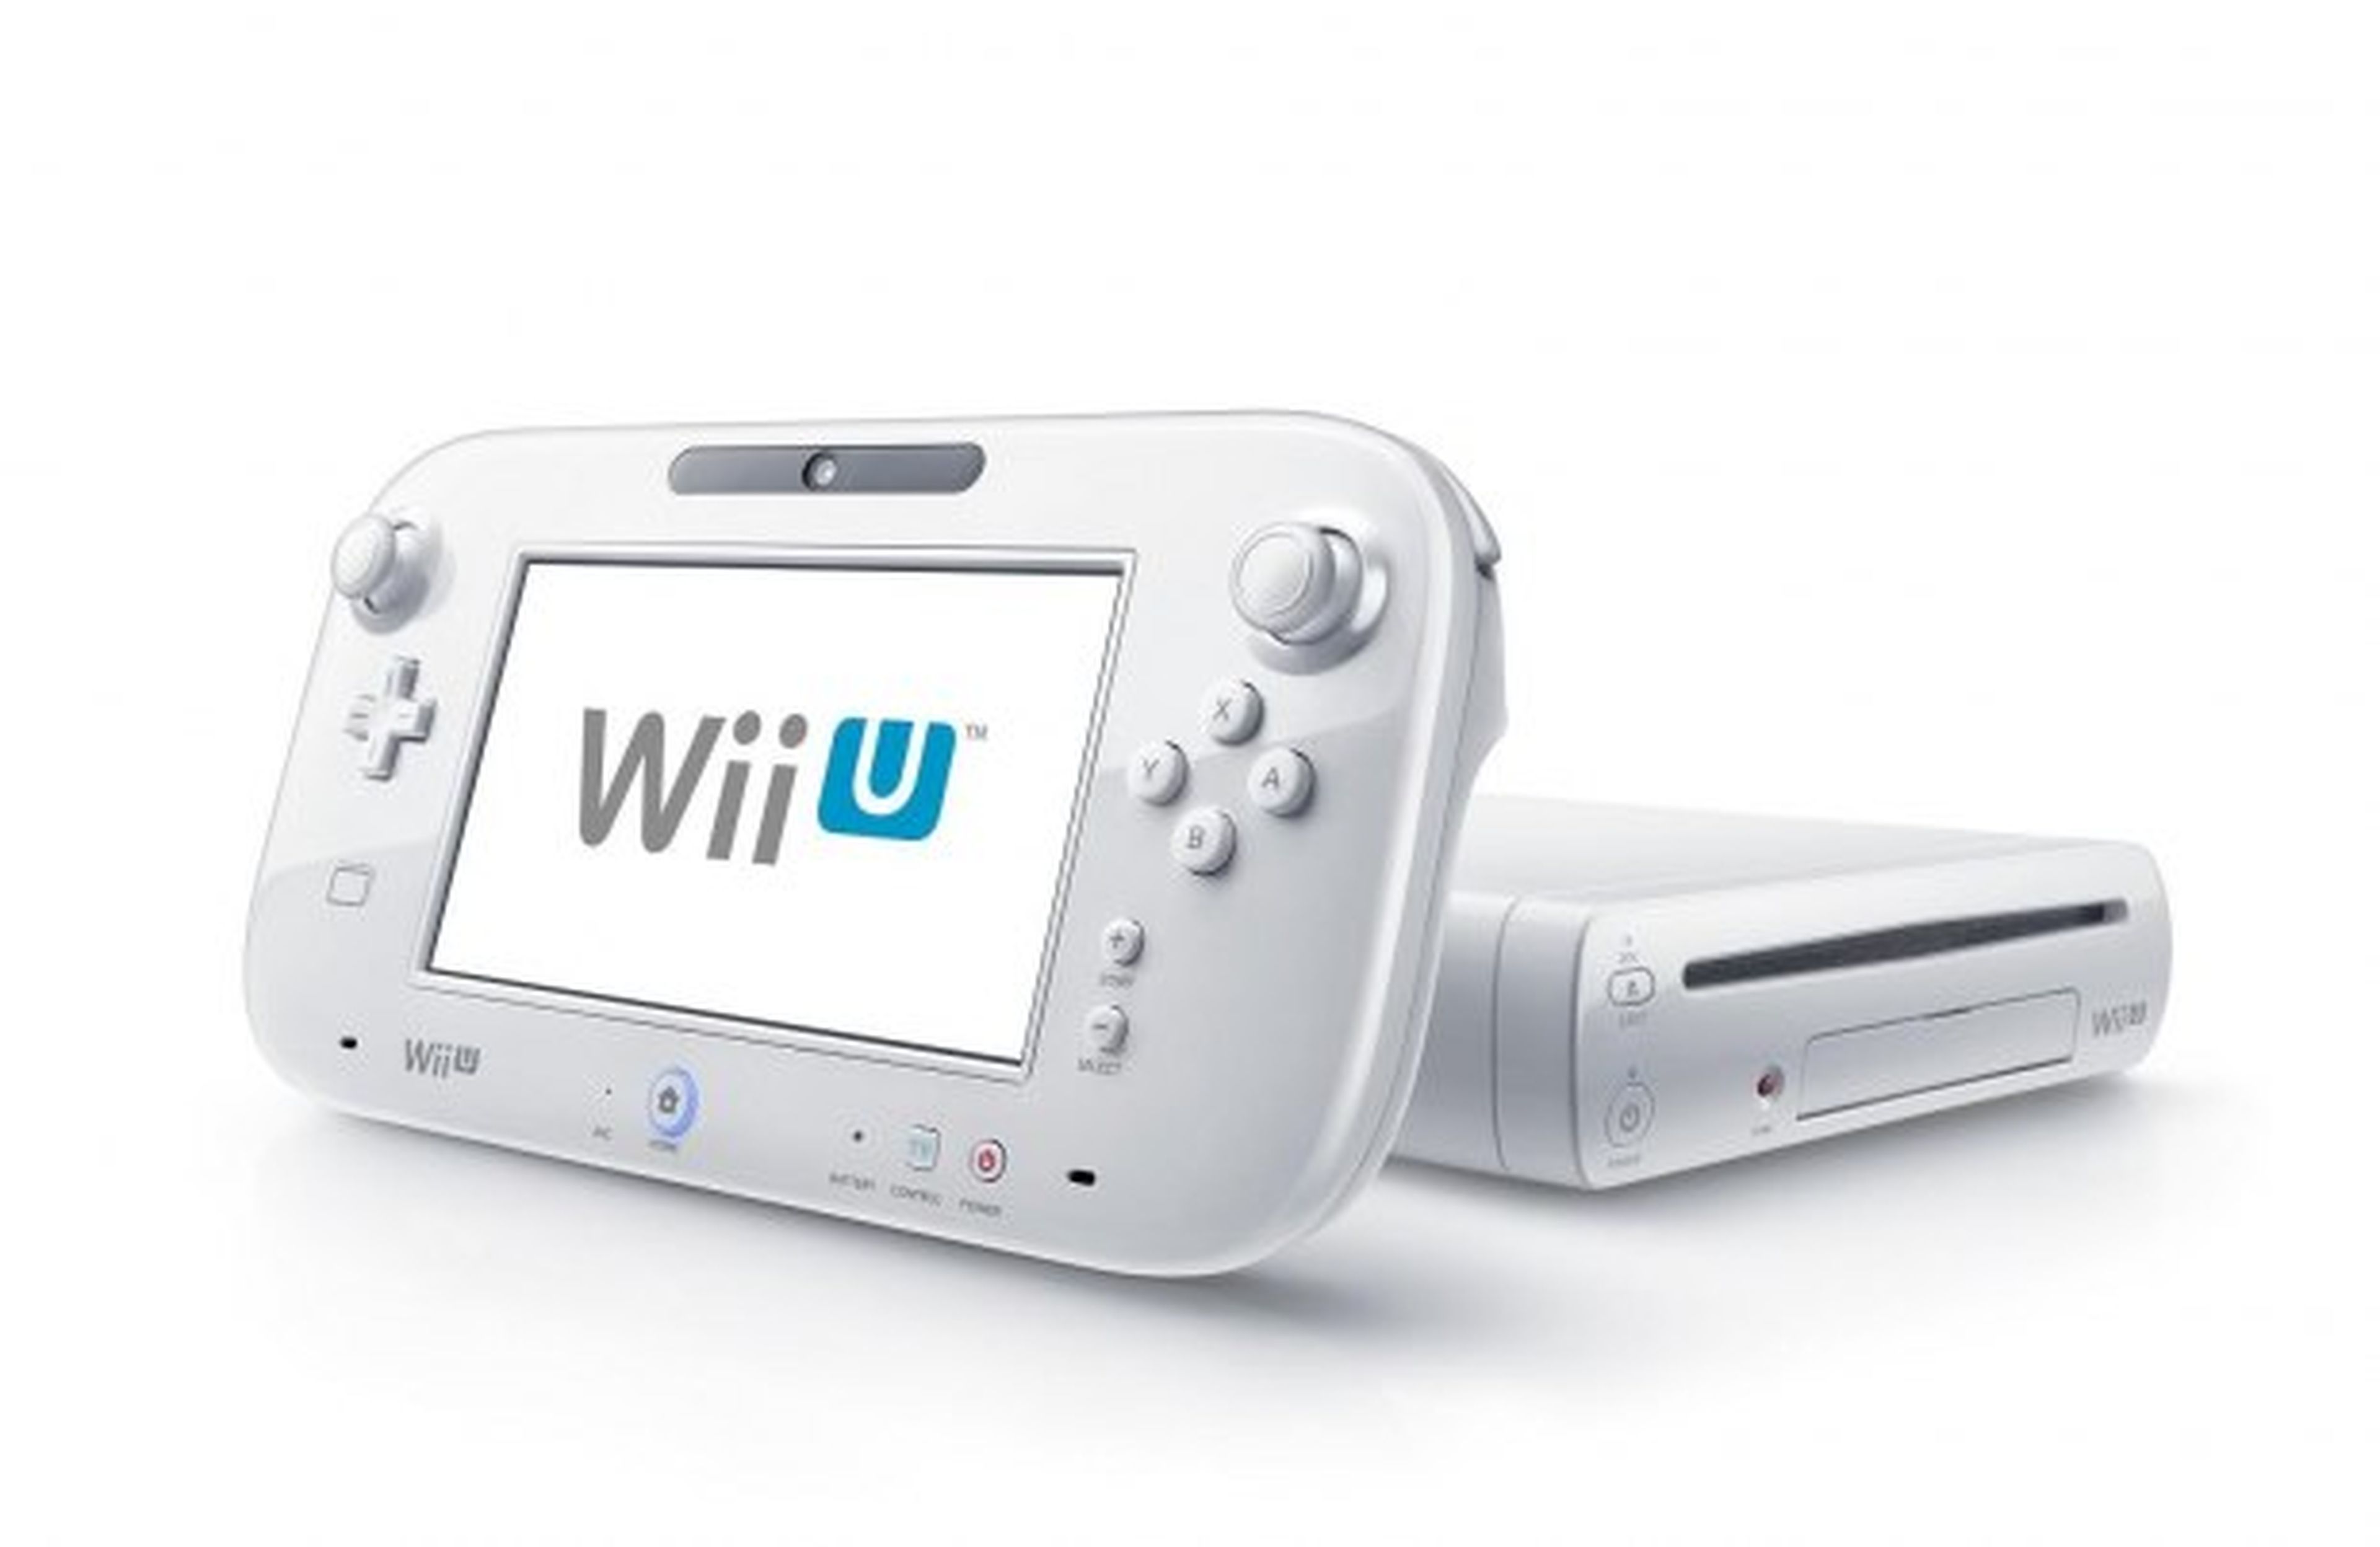 Wii U en riesgo? Reportan muerte de unidades por falta de uso